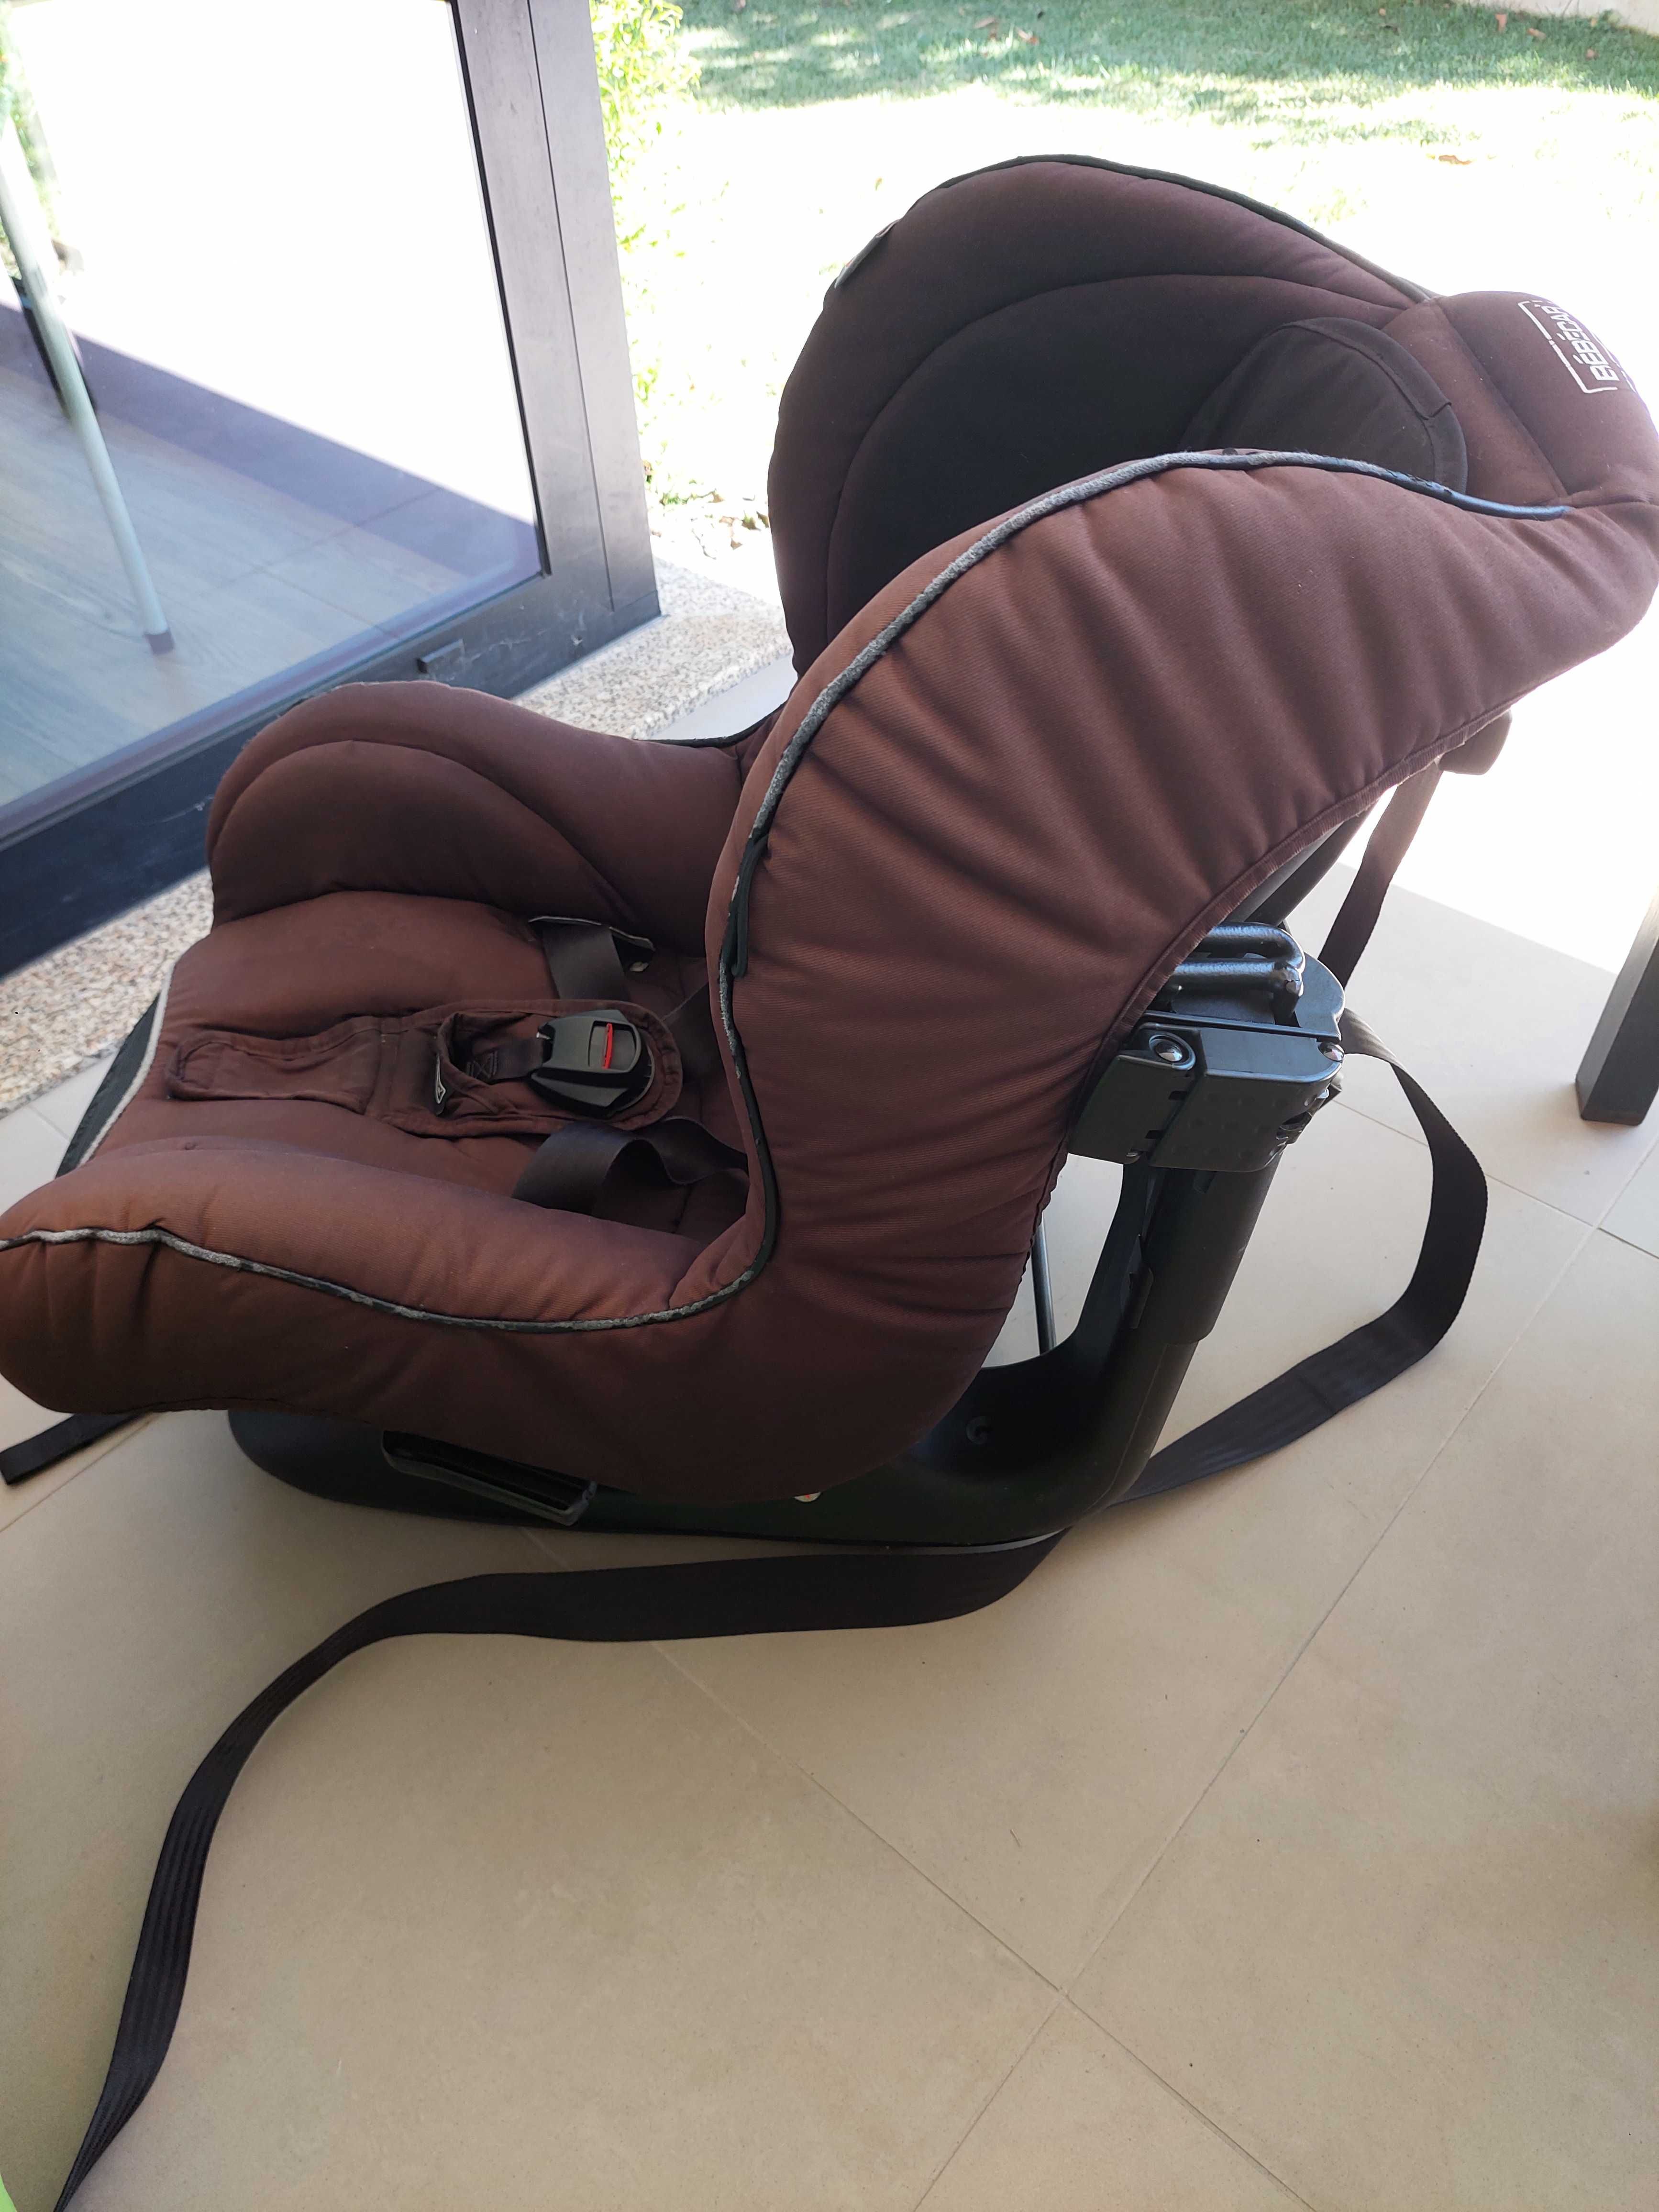 Cadeira auto para bebé - bebecar